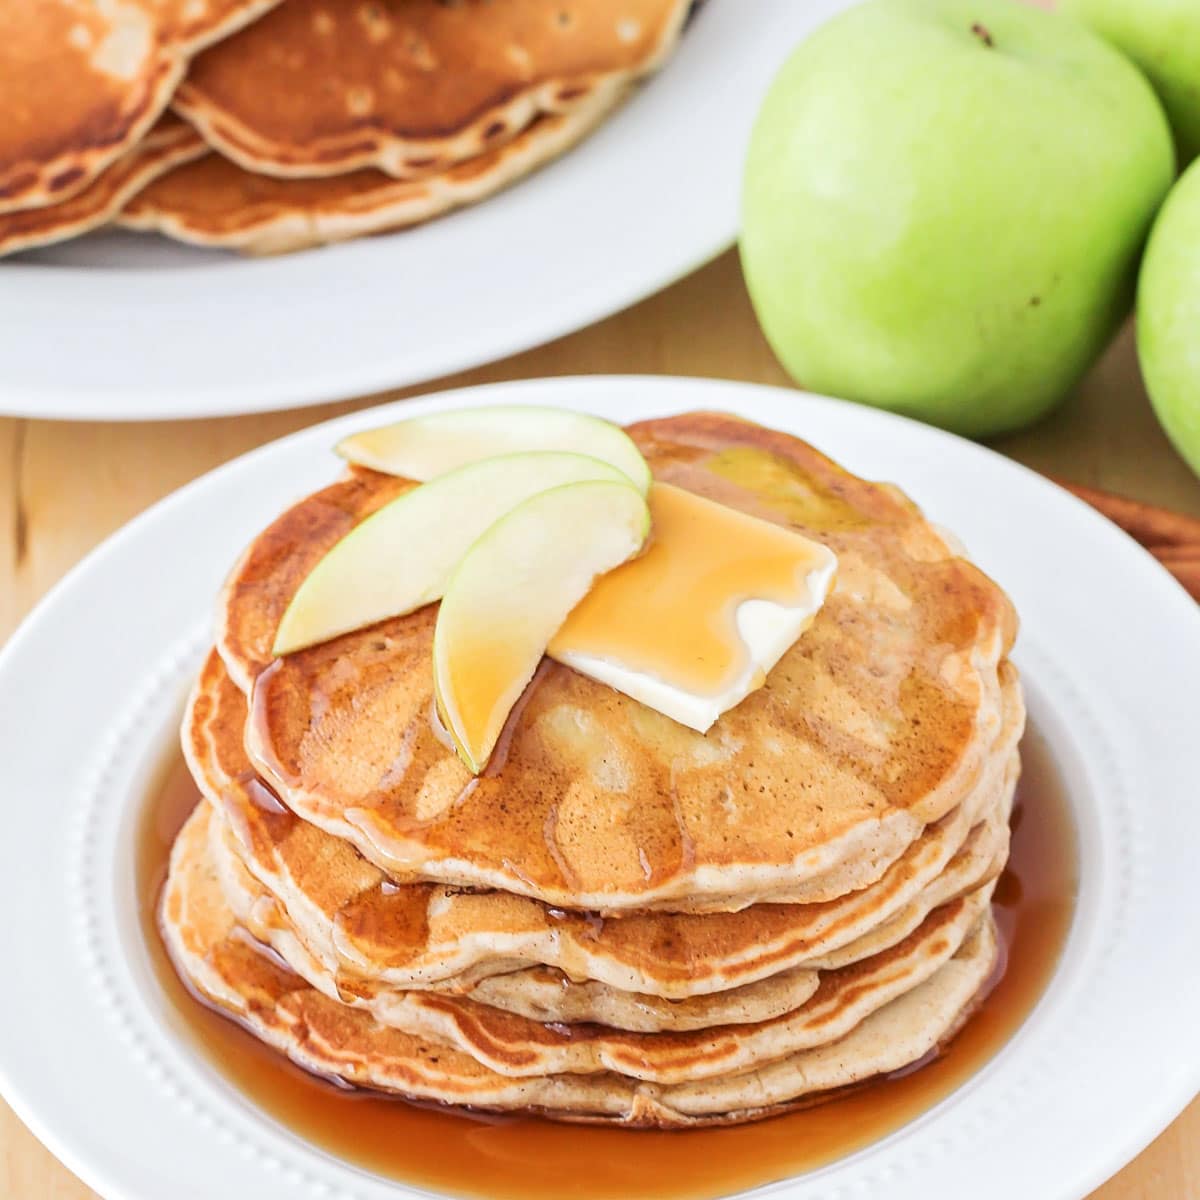 Breakfast for dinner - apple pancakes stacked on white plate.